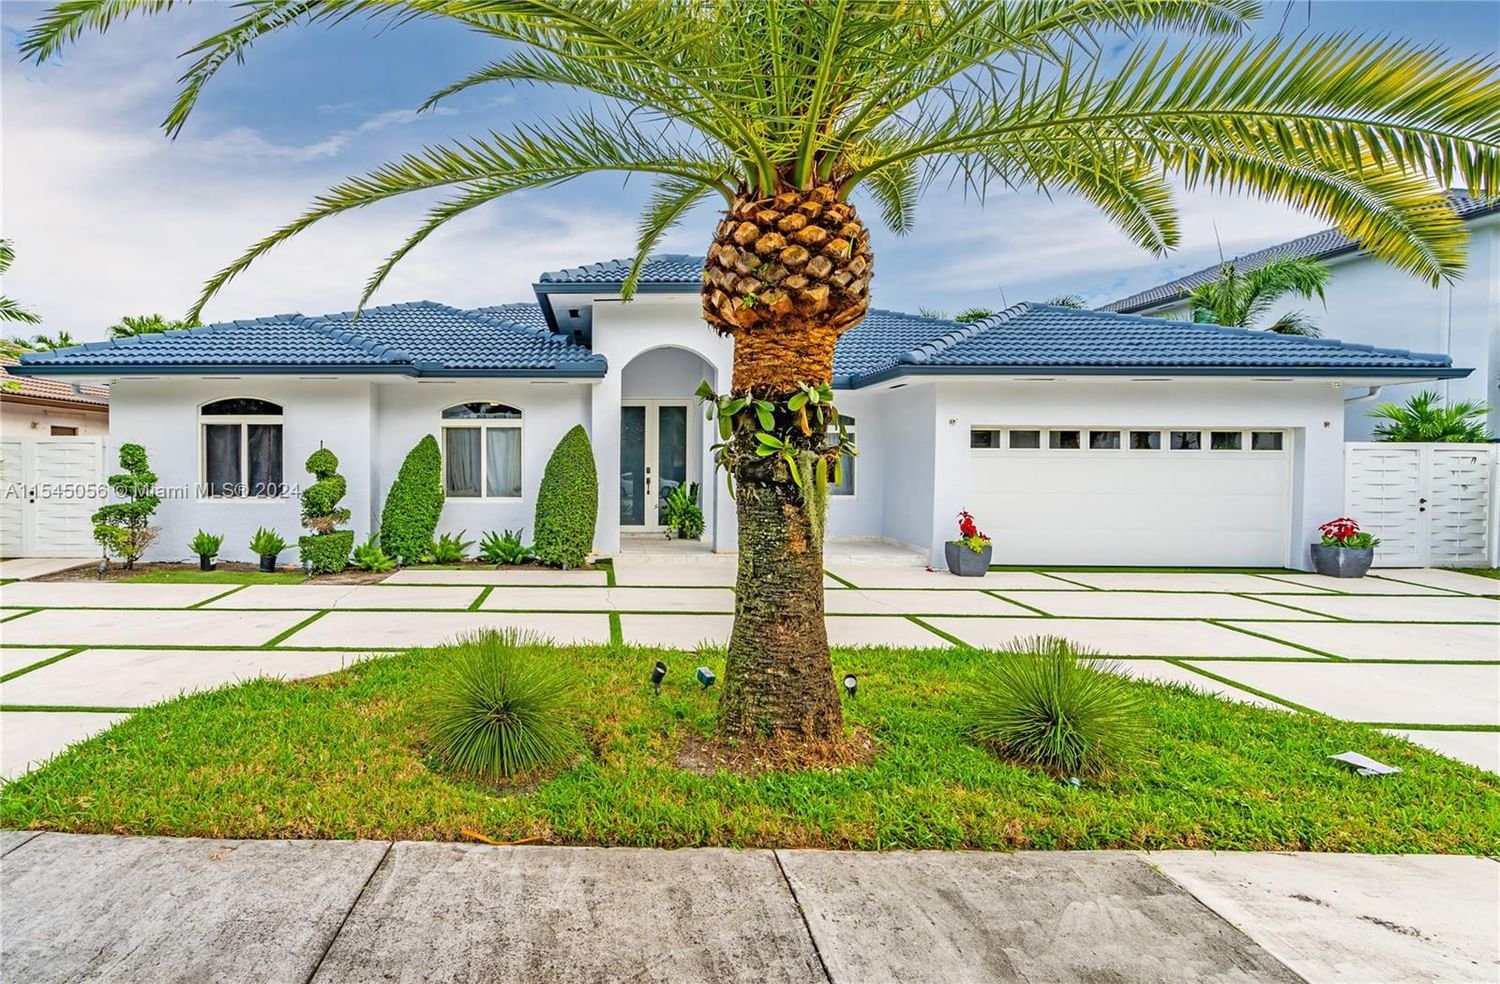 Real estate property located at 16231 77th Pl, Miami-Dade County, DOMINGO SUB, Miami Lakes, FL